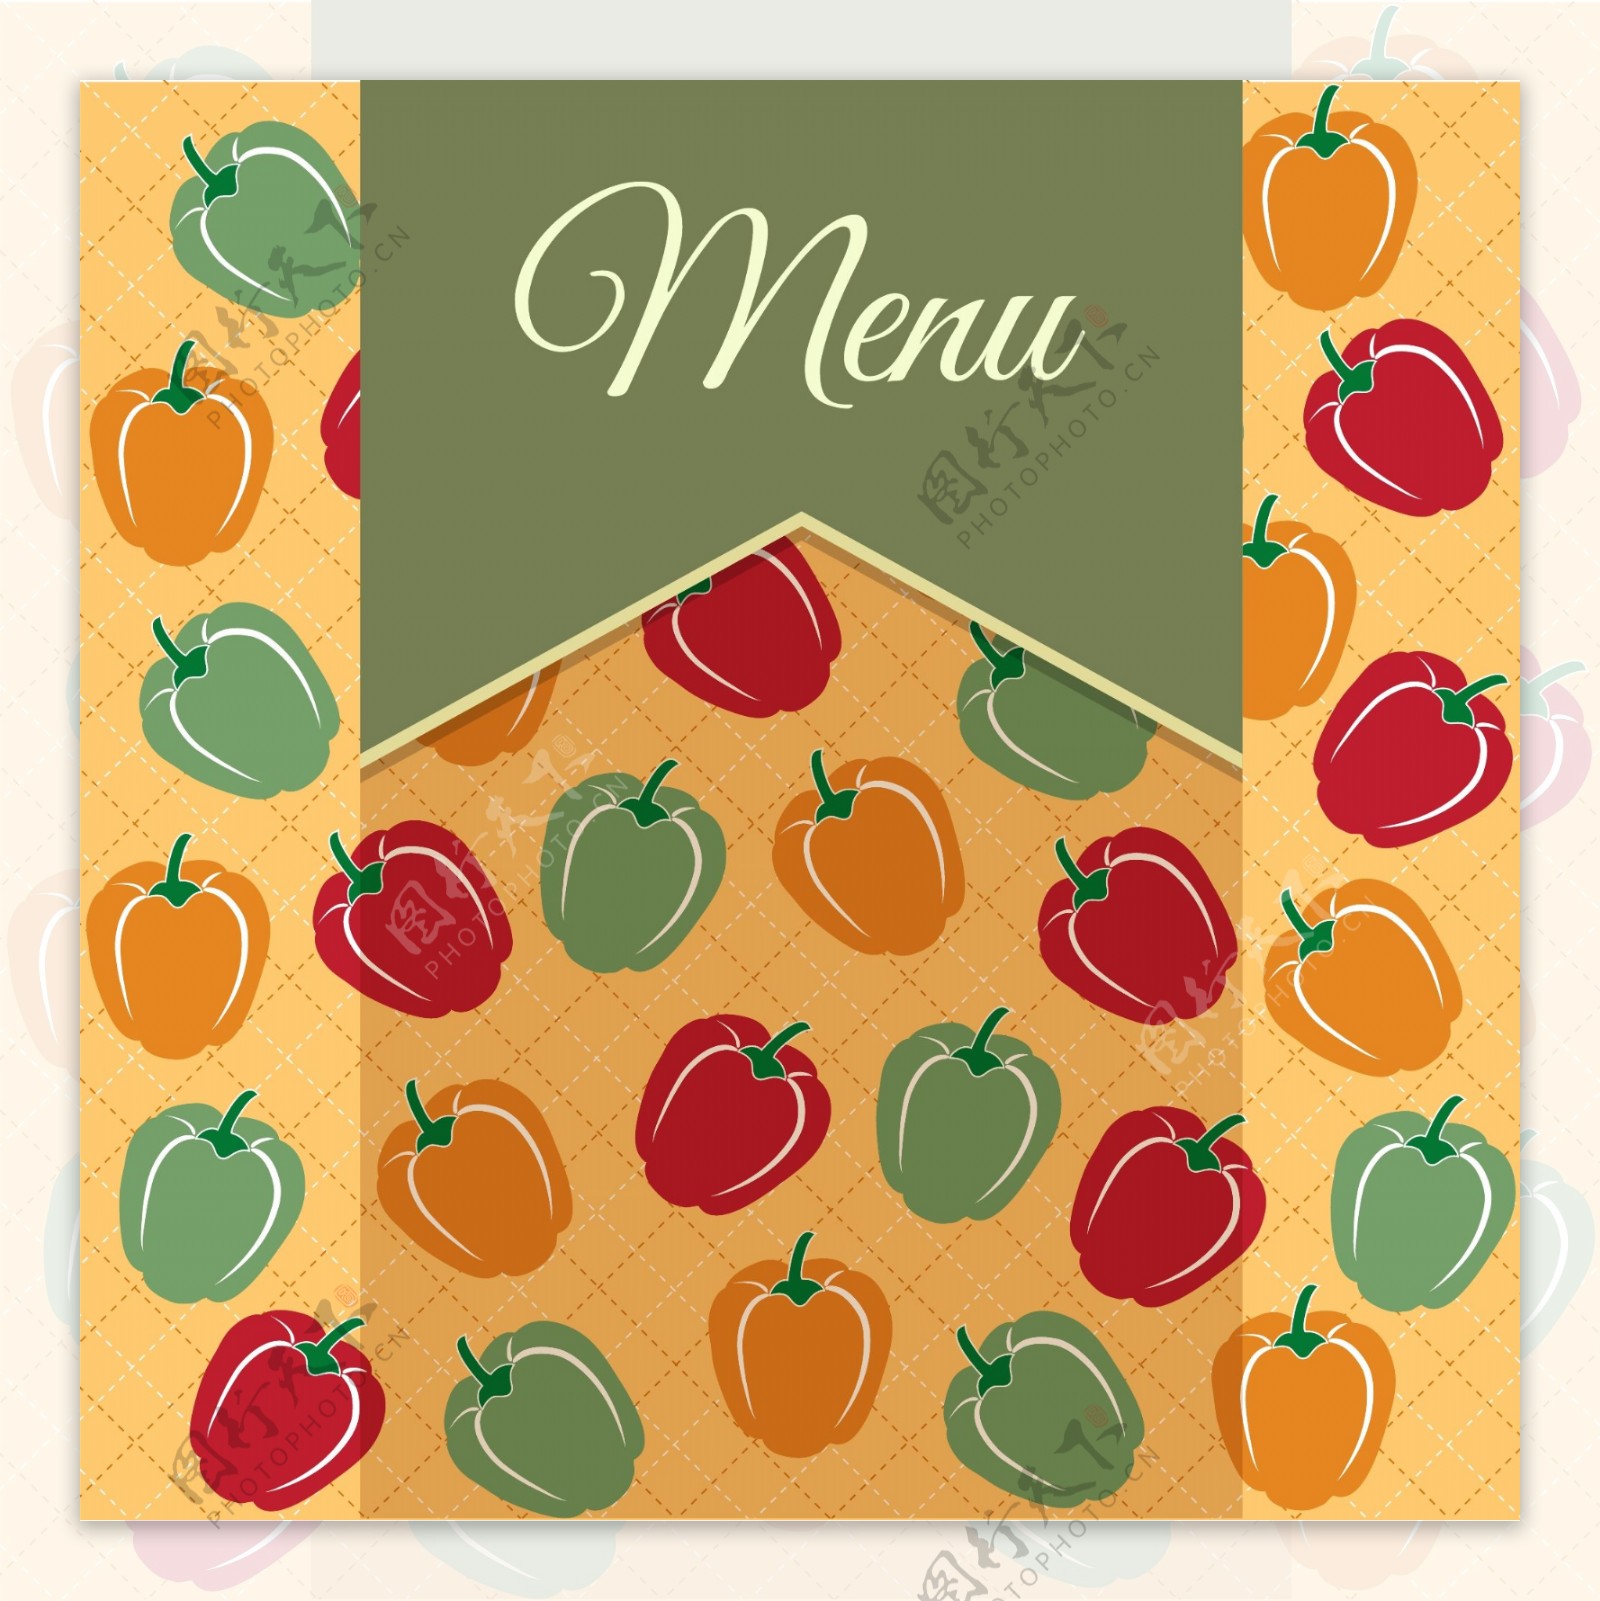 彩色辣椒图案的餐厅菜单